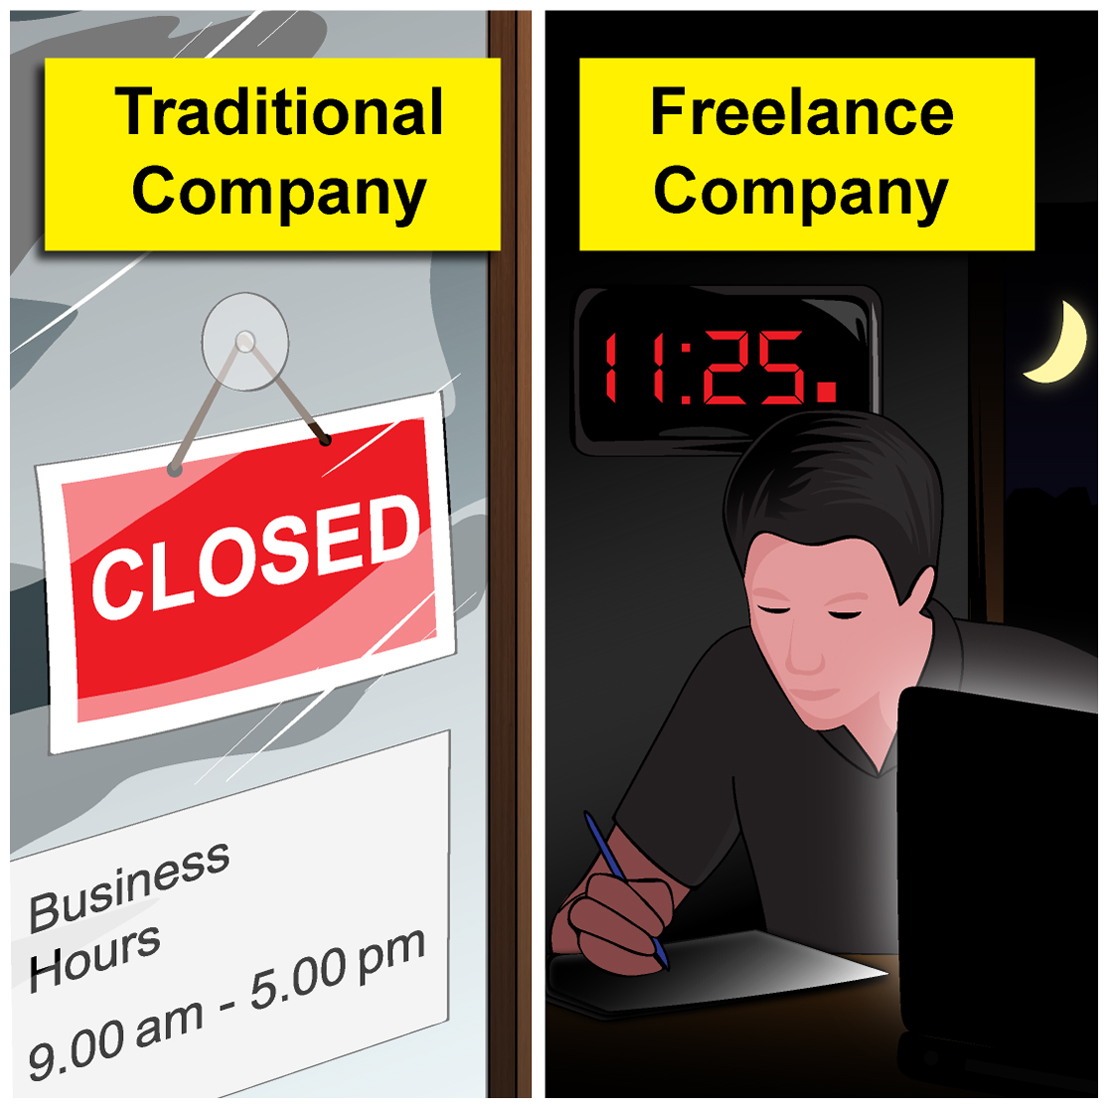 Traditional Company Vs. Freelance Company